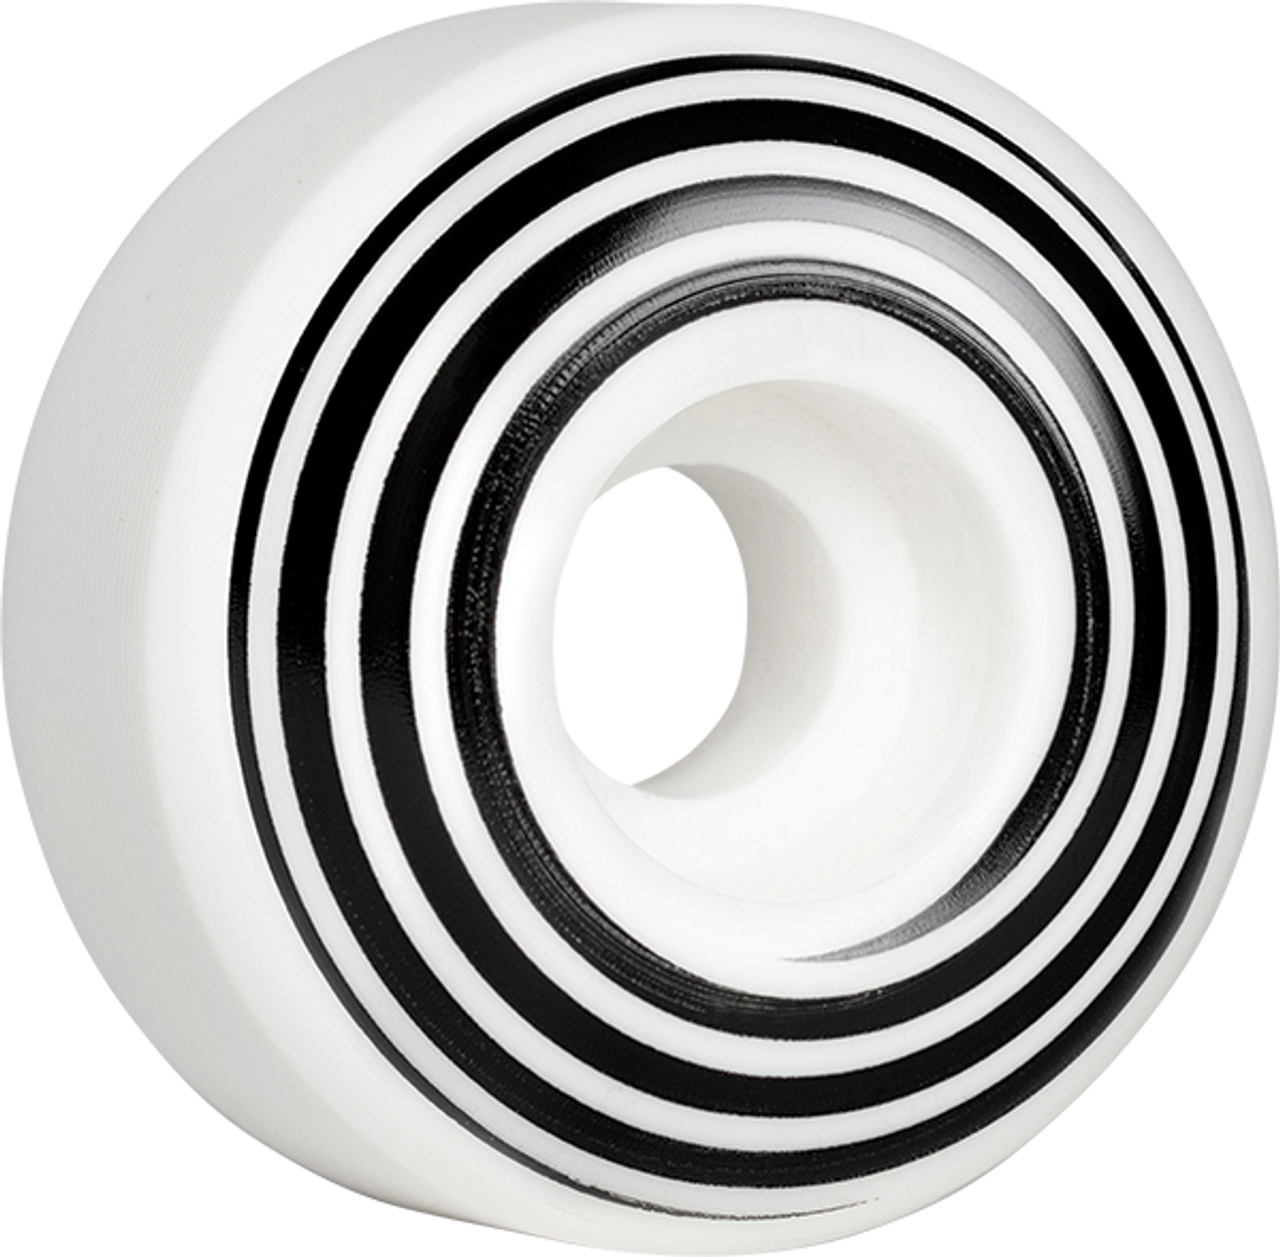 Hazard Wheels Hazard Swirl Cp+: Radial White Wheels 51MM / White